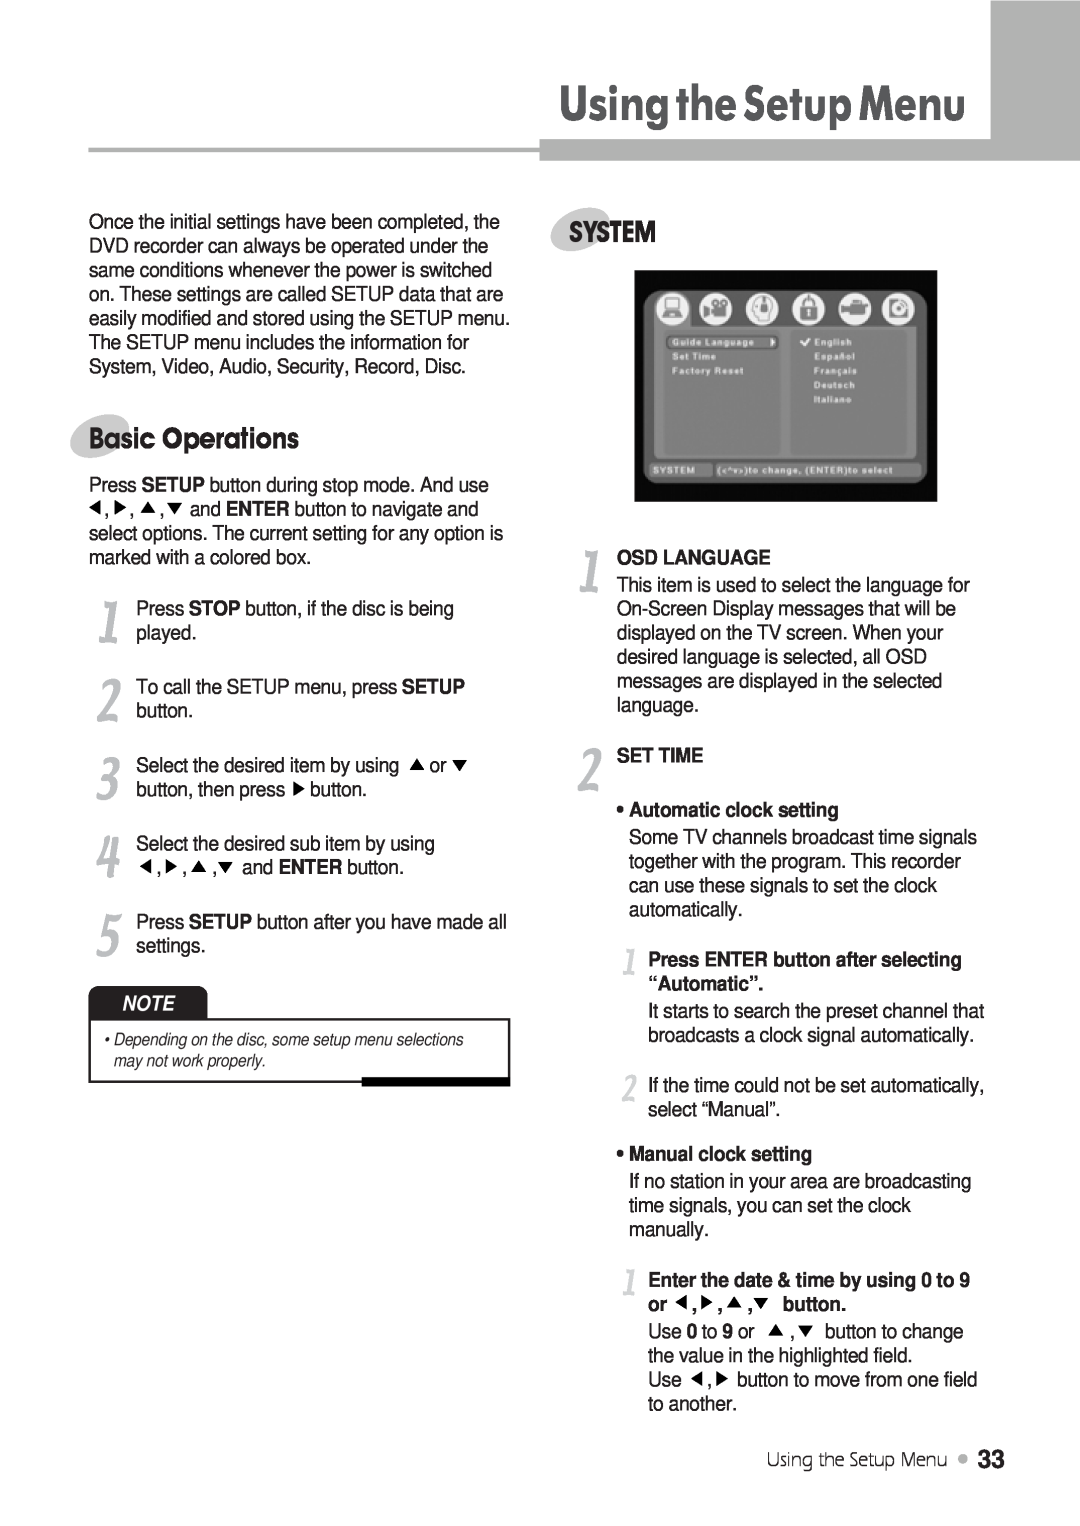 Kodak DRHD-120 manual UsingtheSetupMenu, Basic Operations, System, Osd Language, SET TIME Automatic clock setting 